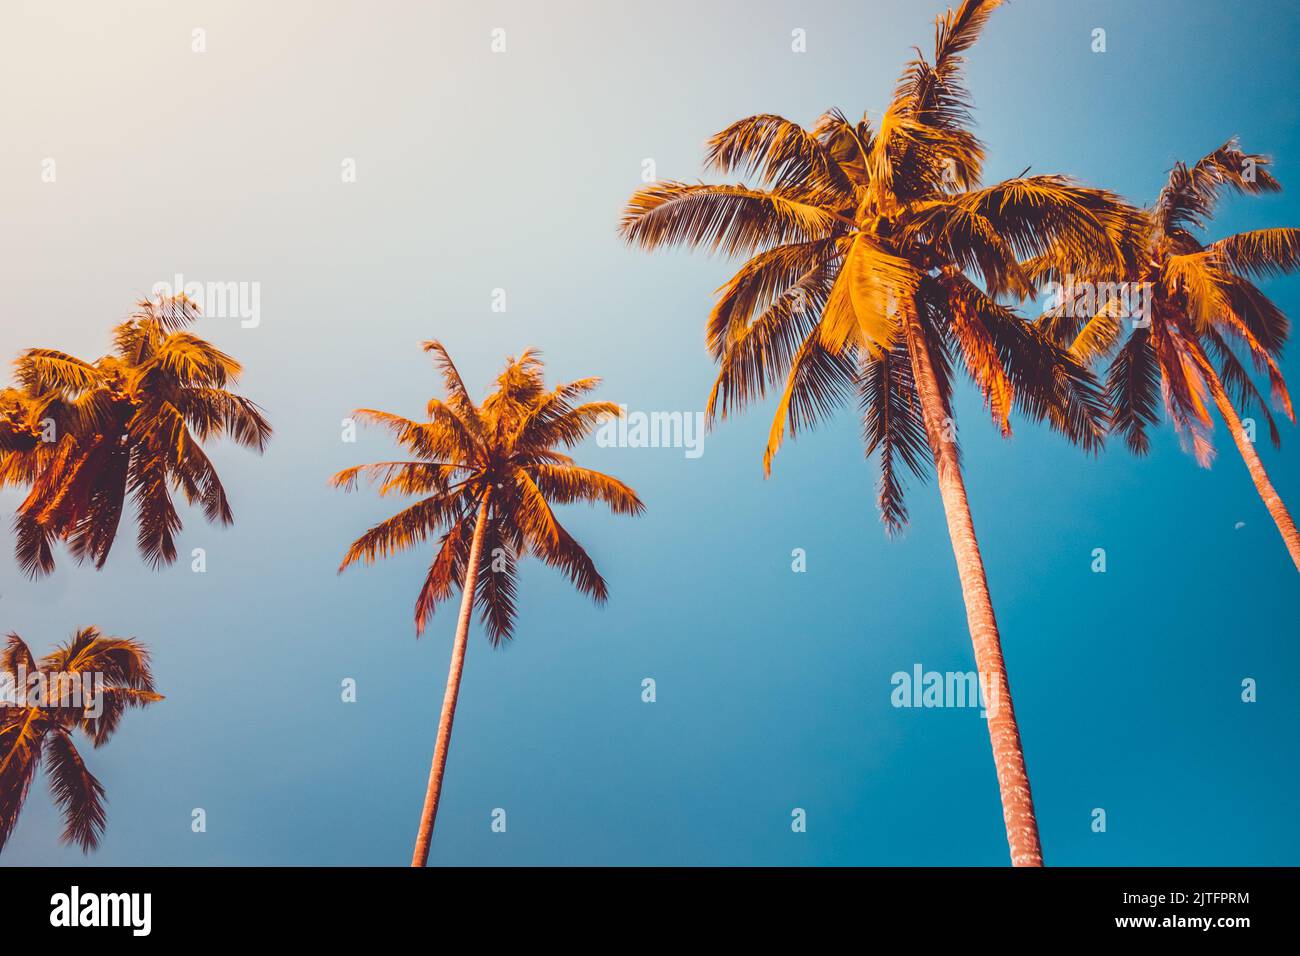 Kokospalmen orange Krone gegen blauen Himmel. Tropisches Paradies Natur Hintergrund. Urlaubskonzept, Reisedesign Stockfoto